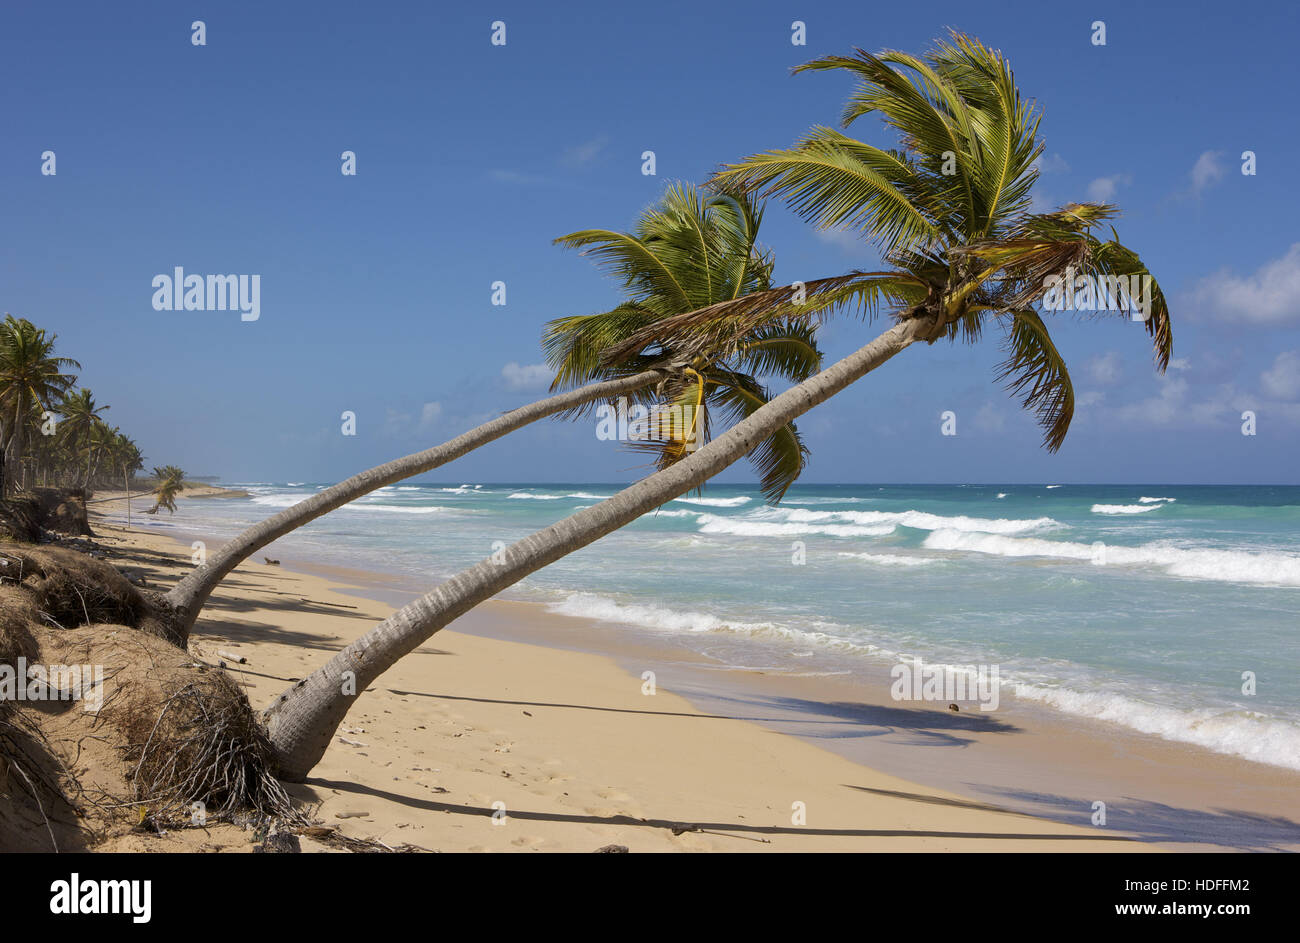 Le cocotier sur la plage, la République dominicaine, Caraïbes Banque D'Images